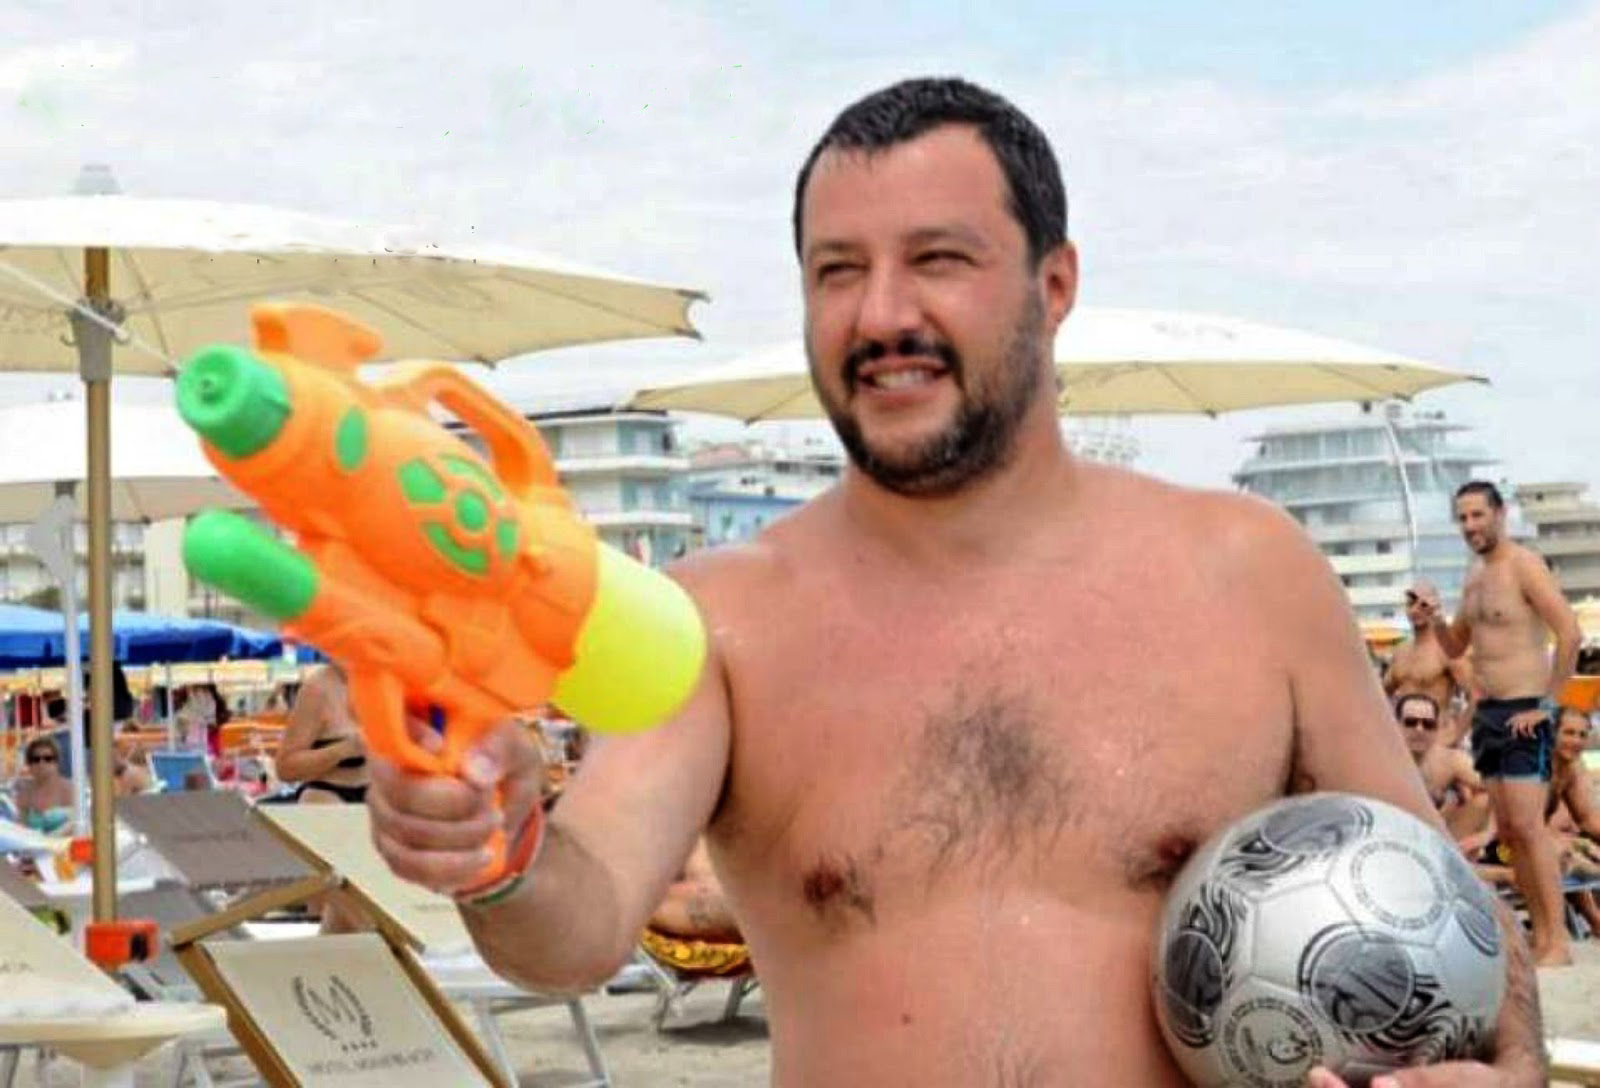 Quella volta che, per colpa di Salvini, non ho scopa@@